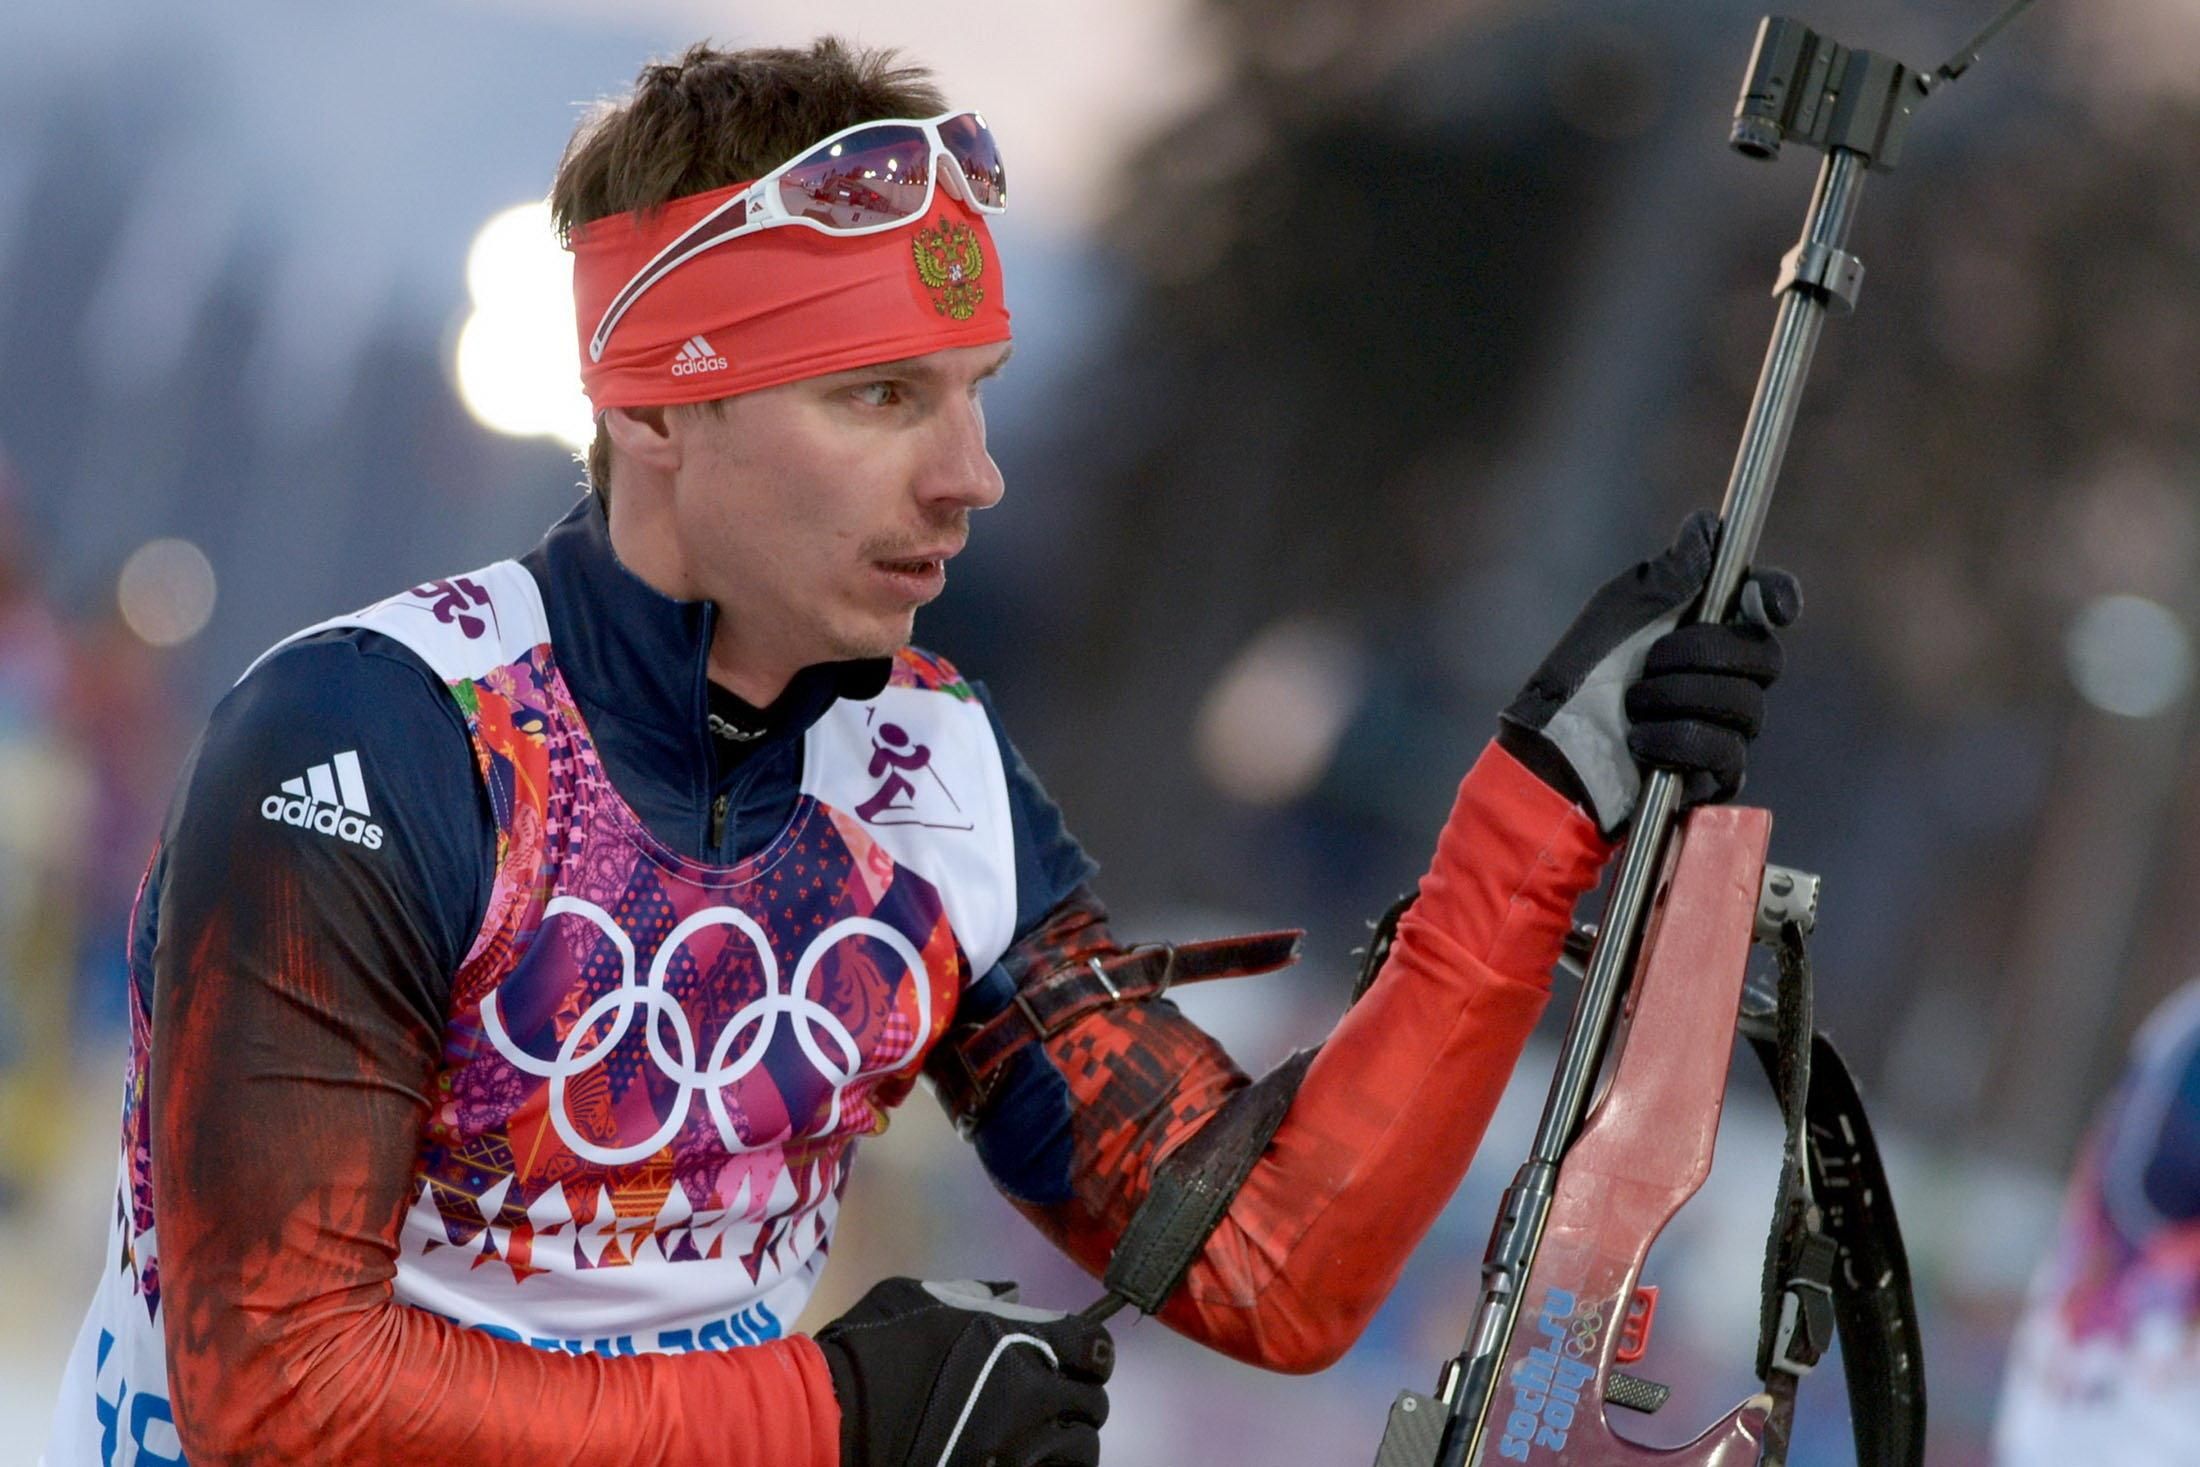 Россия потеряла первое место в медальном зачете Олимпиады-2014 из-за допинга Устюгова